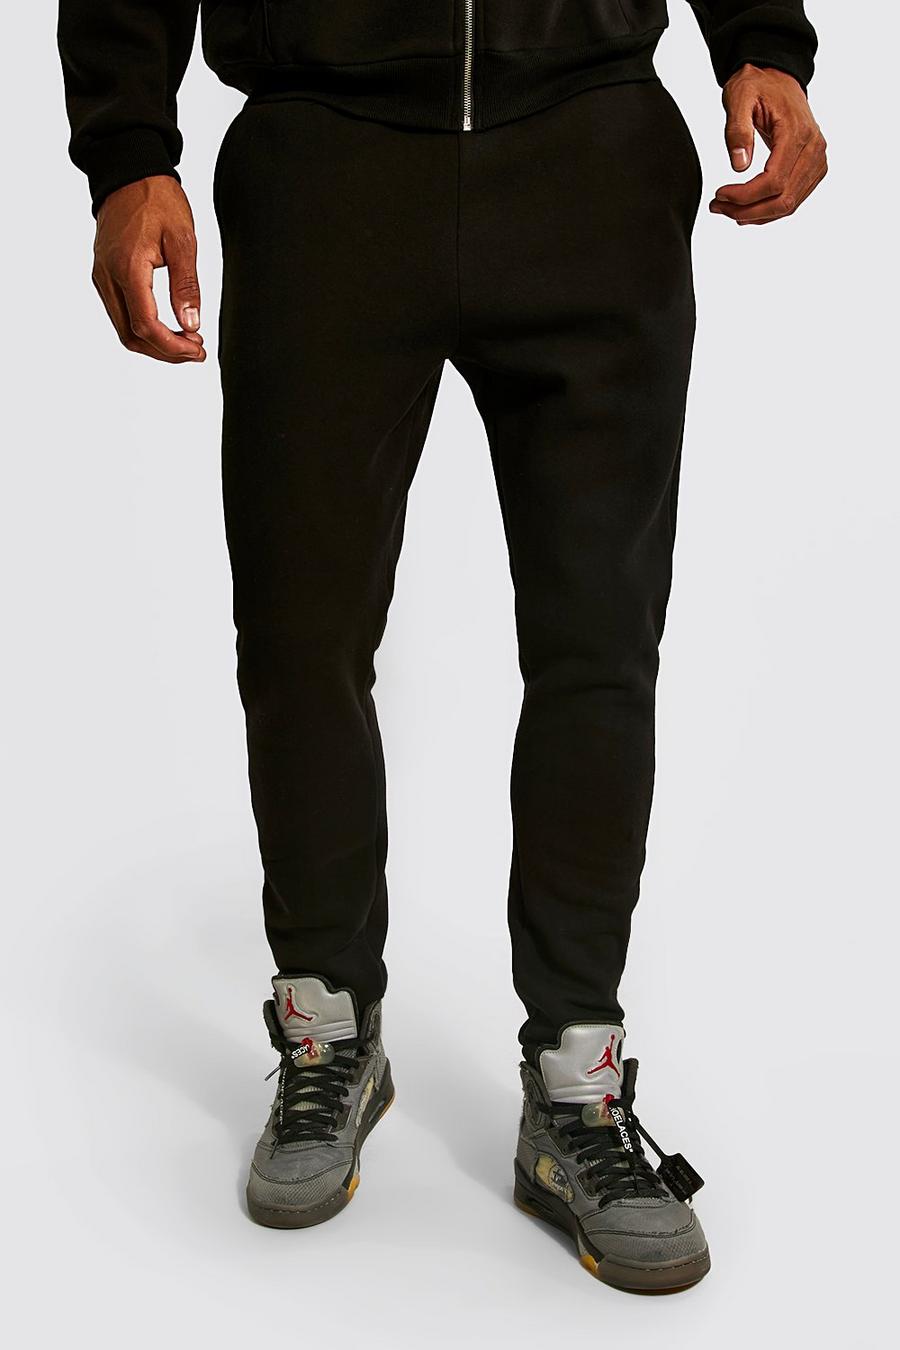 שחור negro מכנסי ריצה עם הדפס בולט בשני צבעים לגברים גבוהים